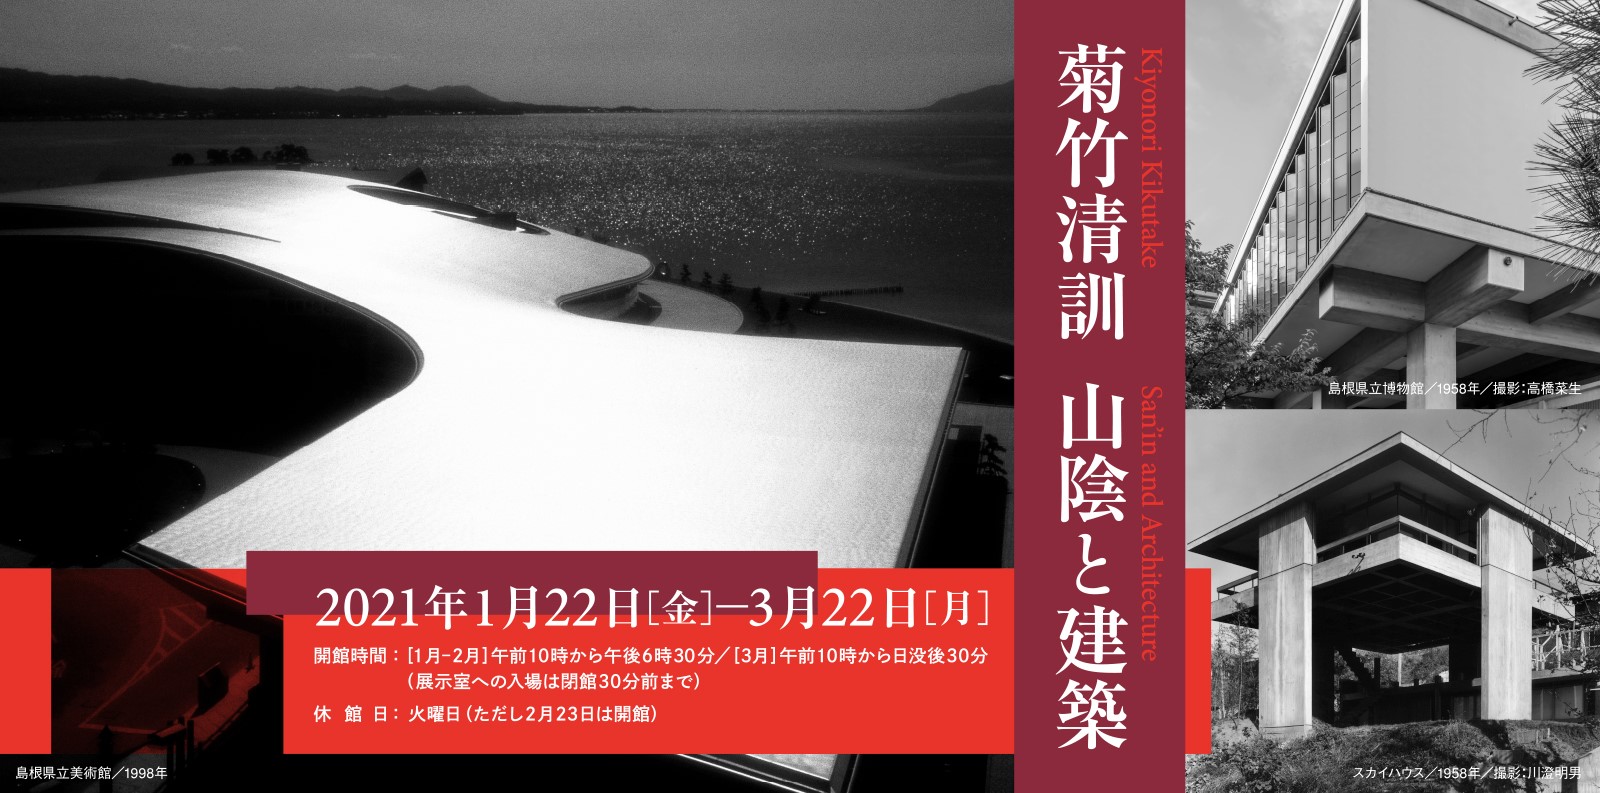 菊竹清訓の建築展「菊竹清訓 山陰と建築」が、島根県立美術館で開催